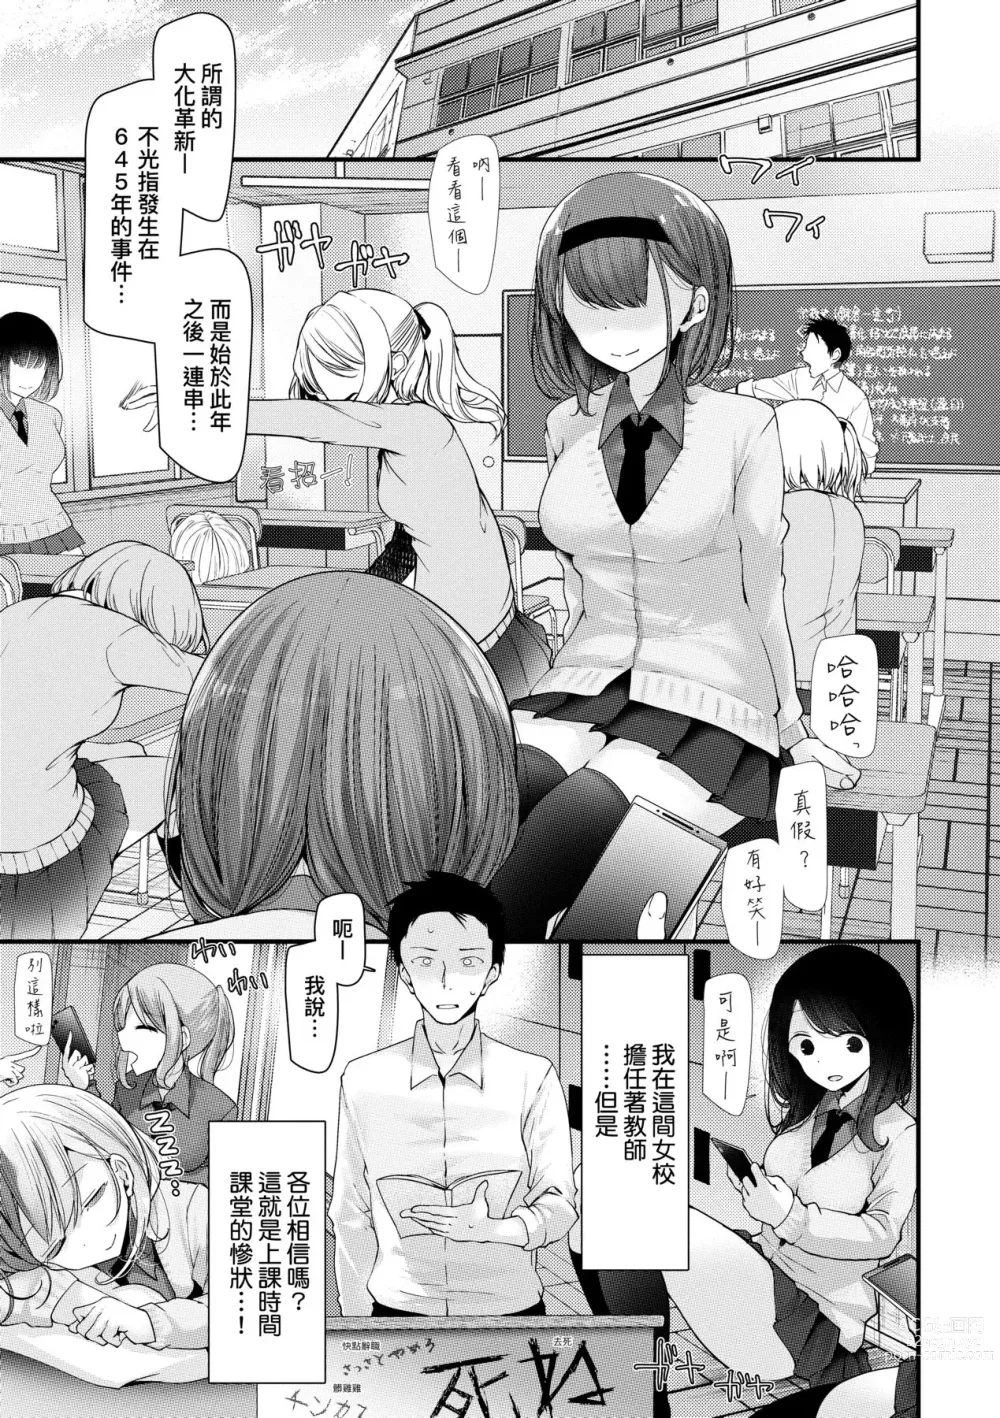 Page 8 of manga 自慰套教室-新學期- 女學生播種懲罰計畫 (decensored)